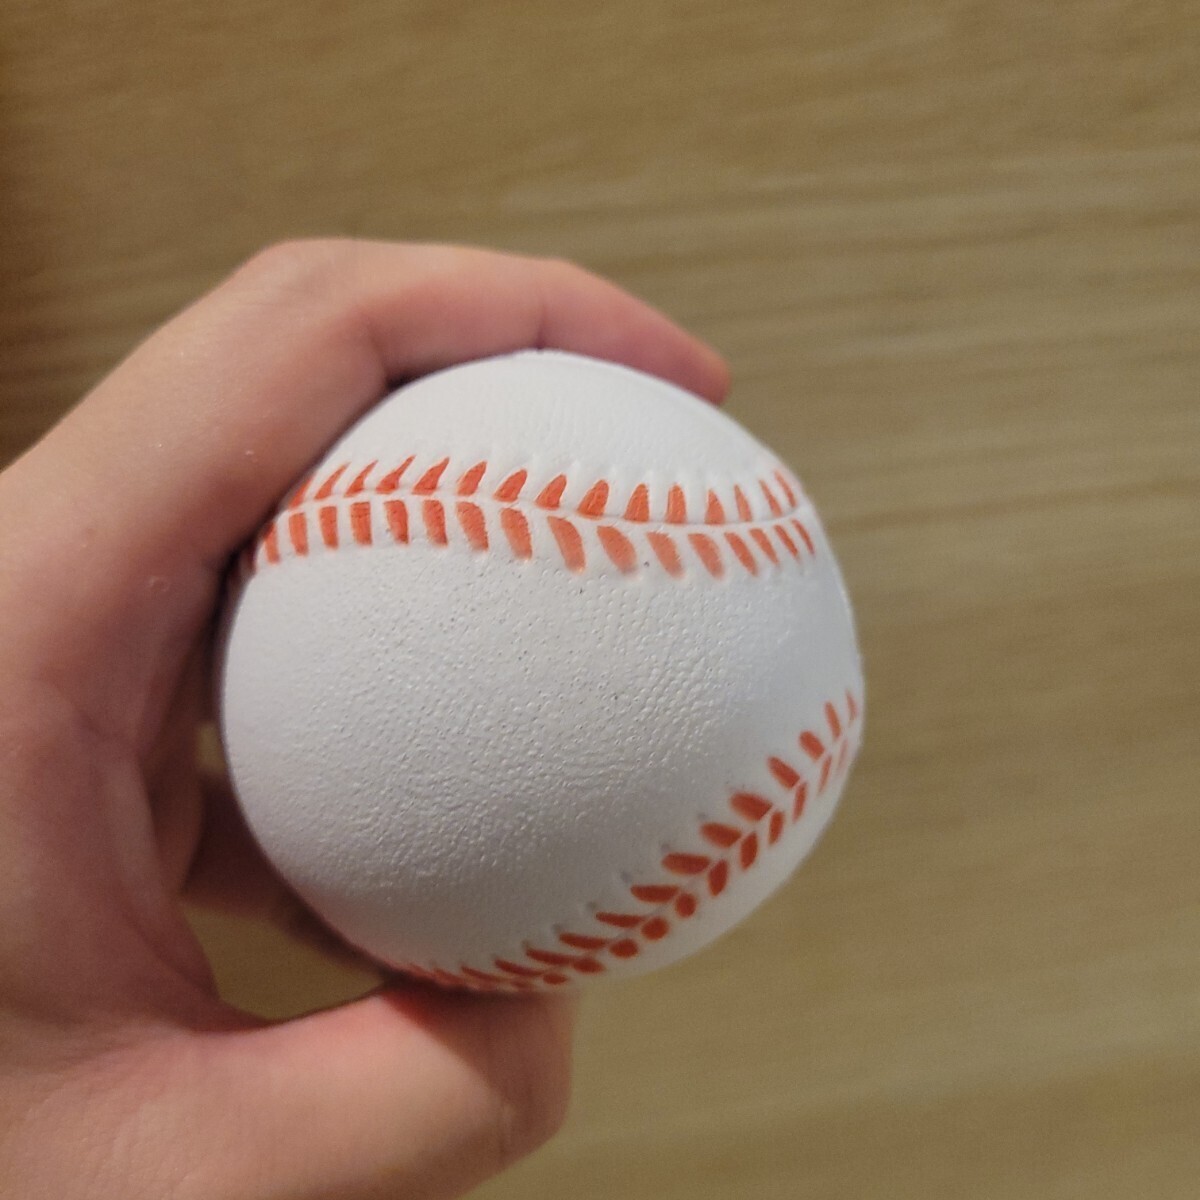 【白】野球ボール 柔らかいポリウレタンボール 10球 セット 室内練習